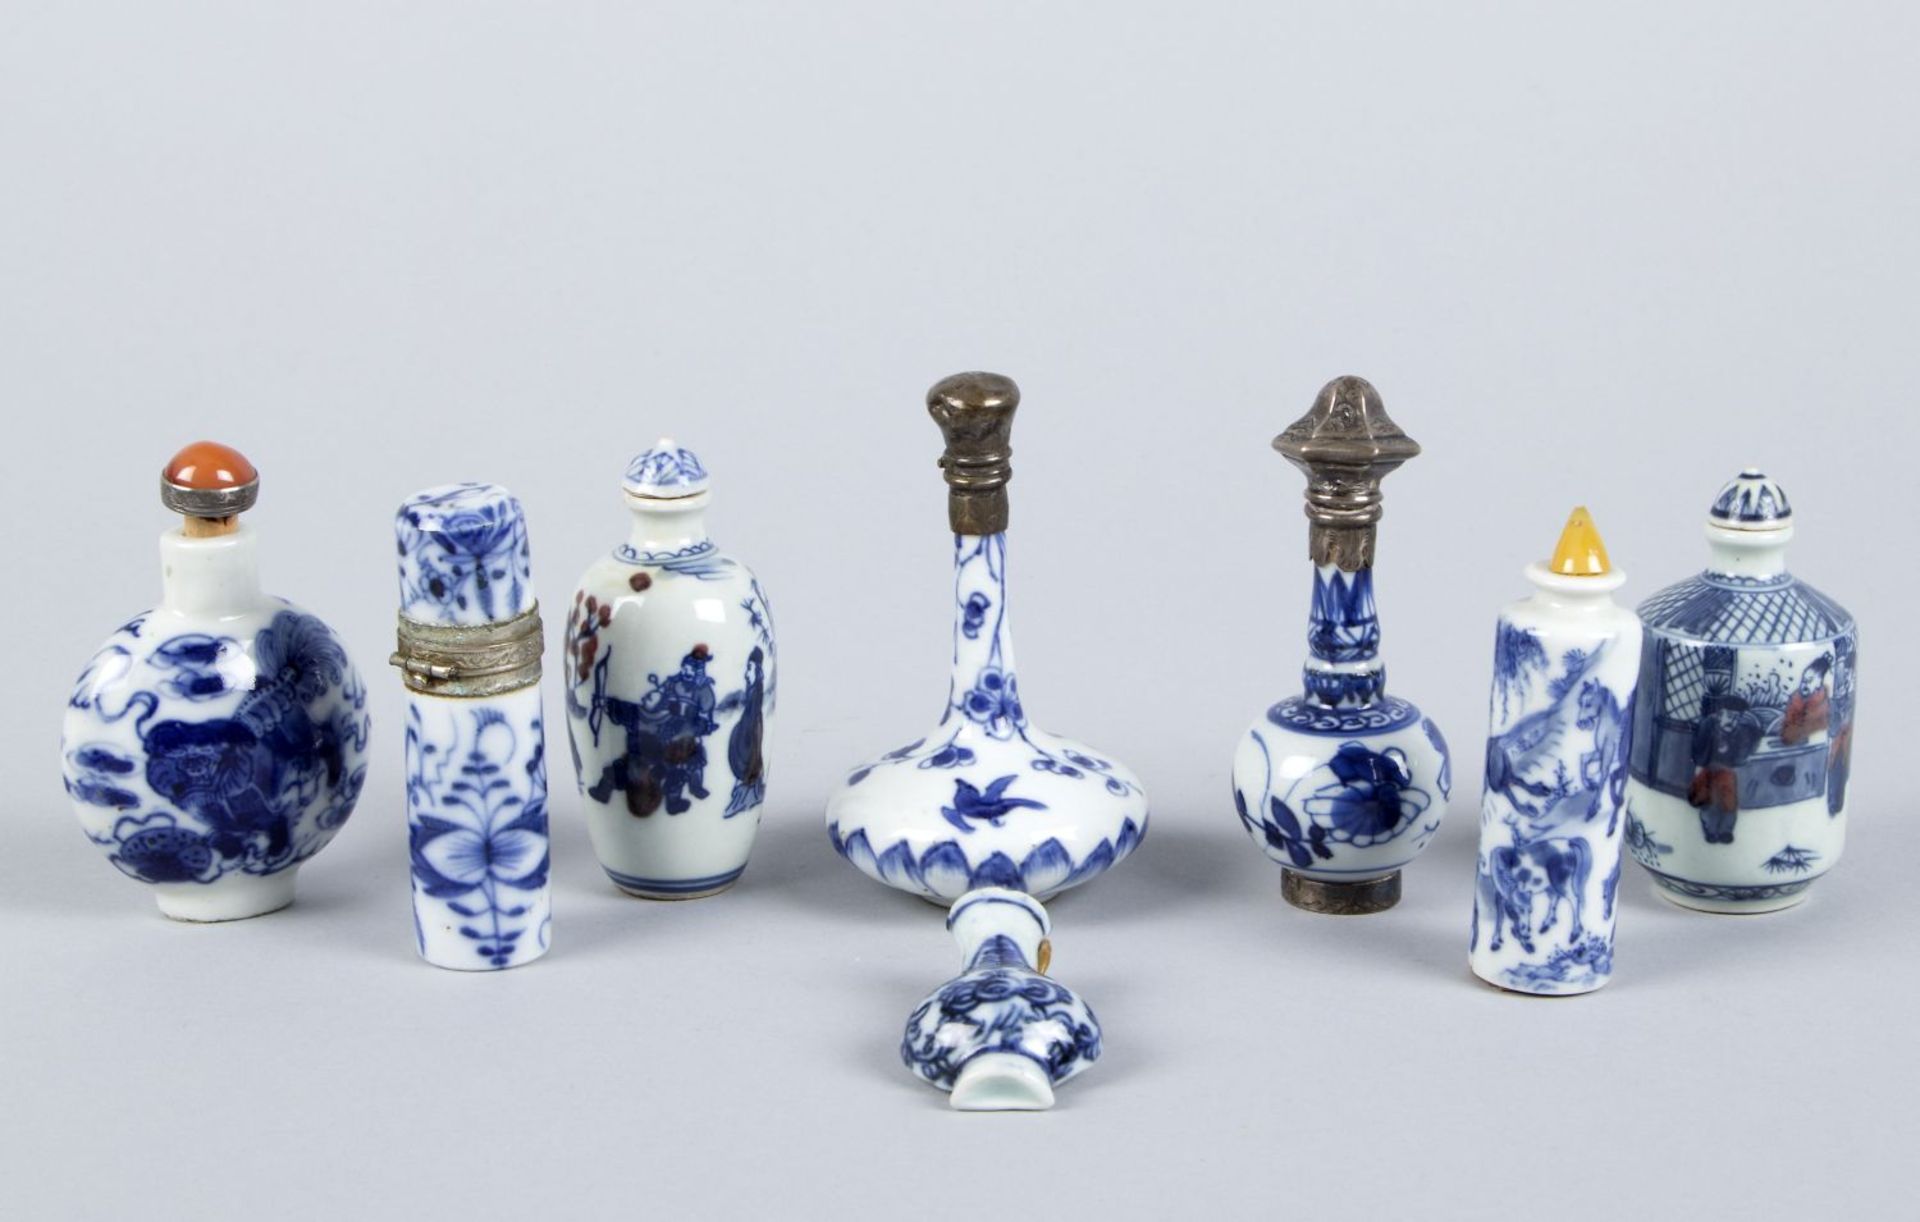 Vier snuff bottles, 3 Flacons und MiniaturväschenPorzellan. Versch. blau-weiße Dekore. China. H. bis